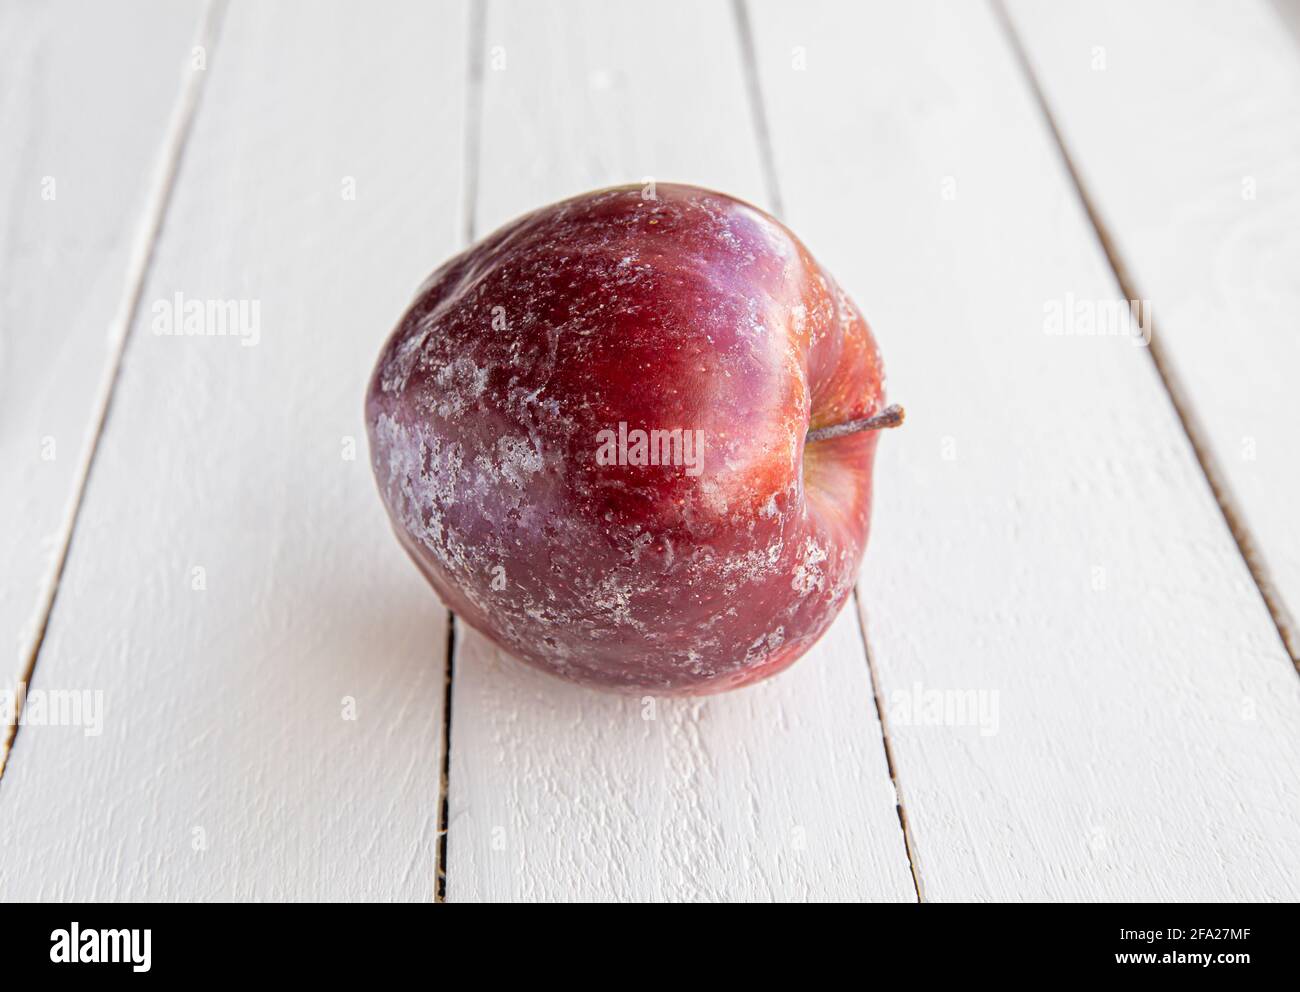 Mela rossa con strato bianco di cera protettiva che si scioglie parzialmente dopo aver lavato la mela a casa. Prima di vendere in negozio, applicano la cera. Foto Stock